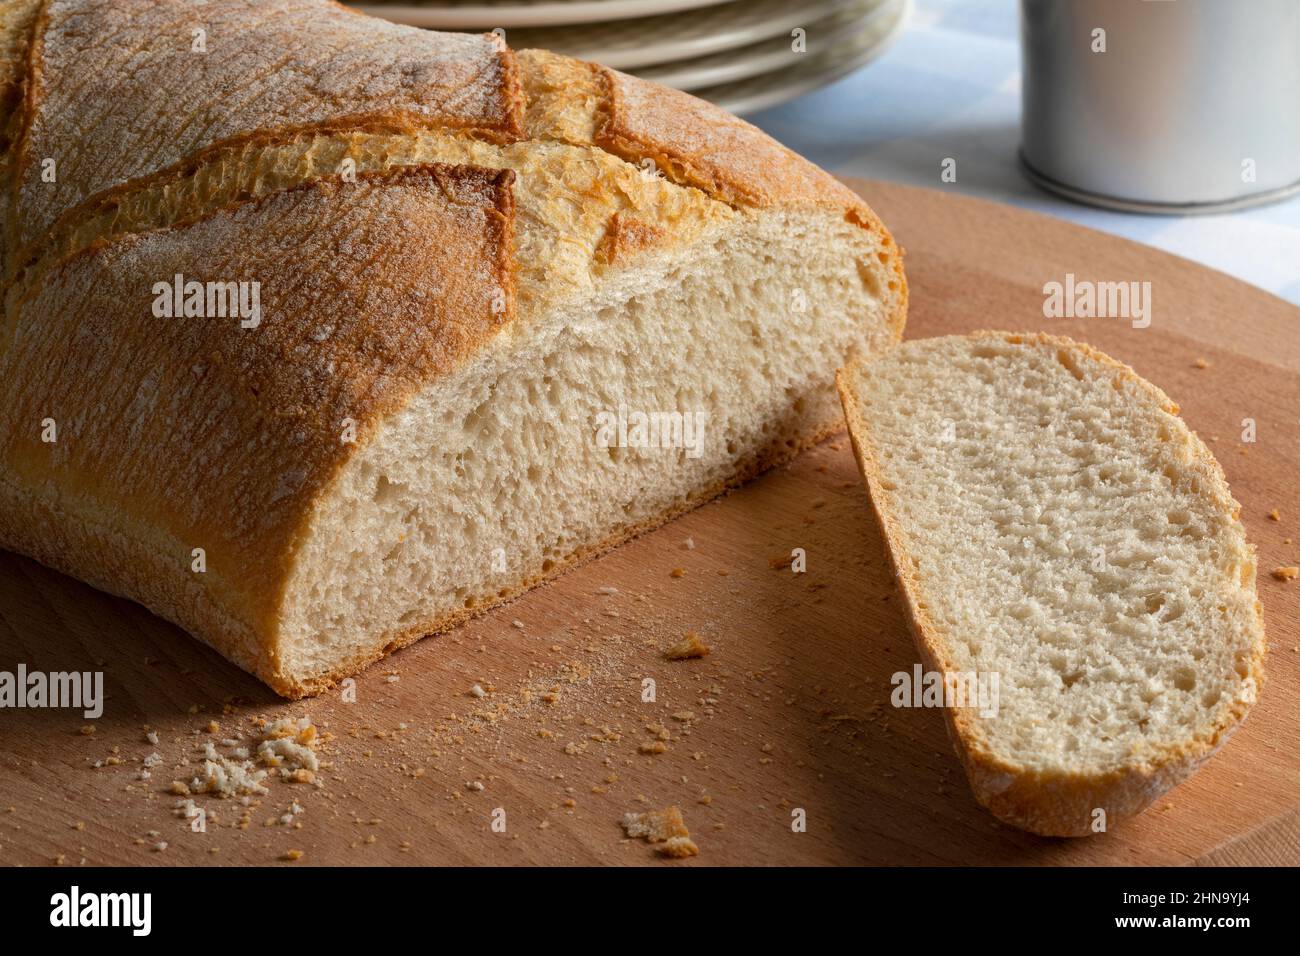 Pagnotta di pane paysan bianco, pane contadino, e una fetta da vicino su un tagliere Foto Stock